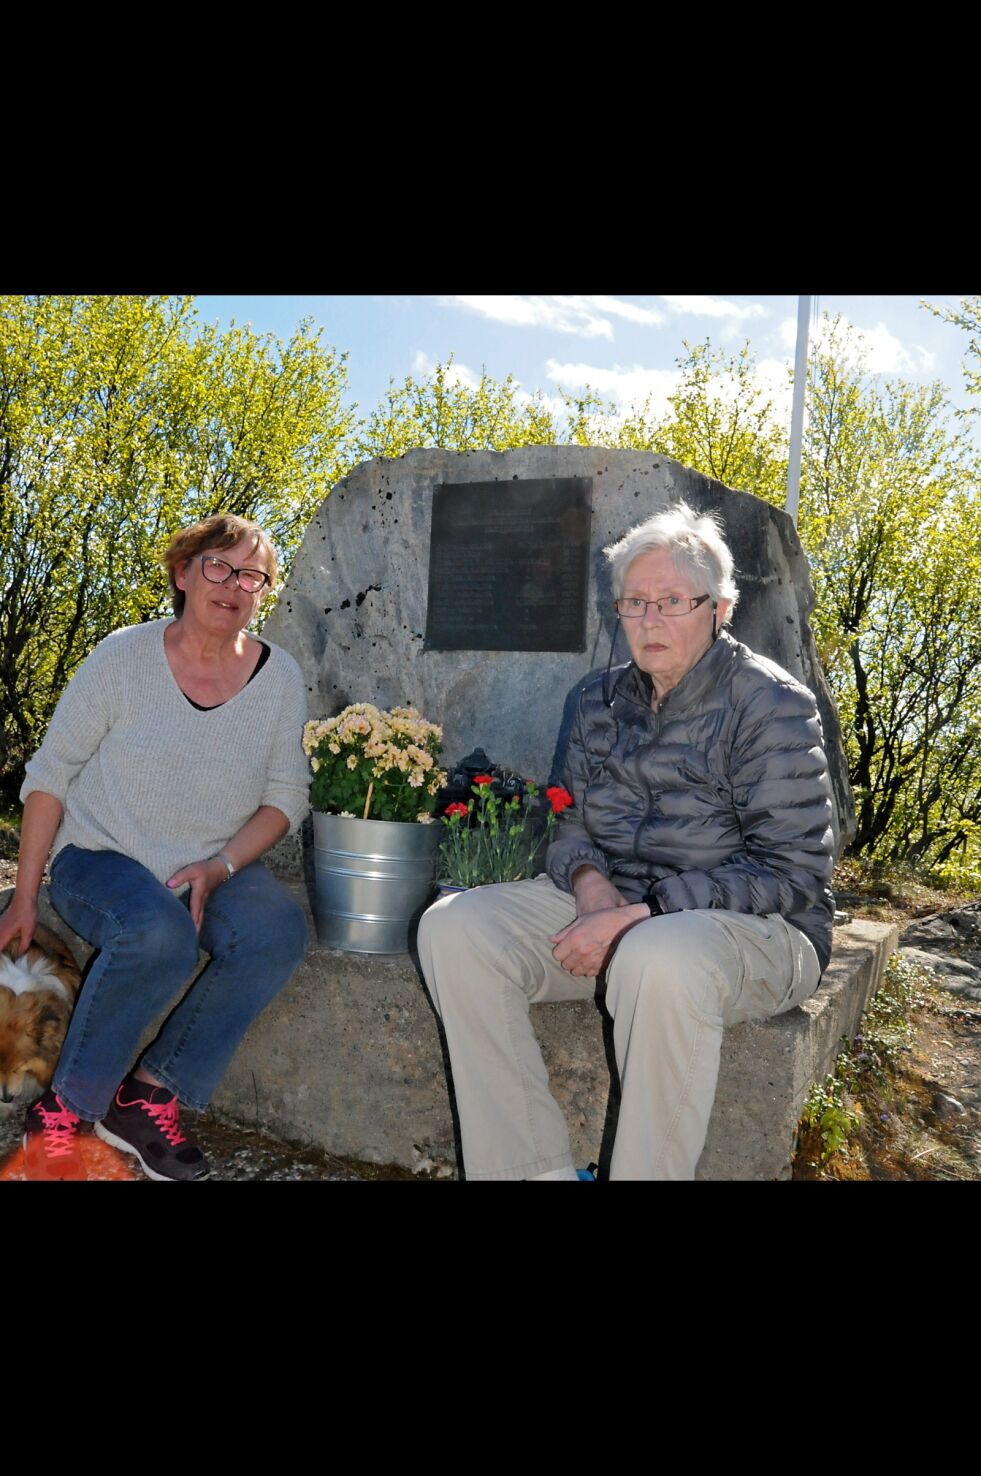 Aud Ramberg (til venstre) og Elsa Danielsen synes tilstanden, tilgjengeligheten og oppmerksomheten rundt monumentet over de drepte ved Andrevannet er skammelig og trist. Her har de med seg blomster for å gjøre det litt penere.
 Foto: Halllgeir Henriksen